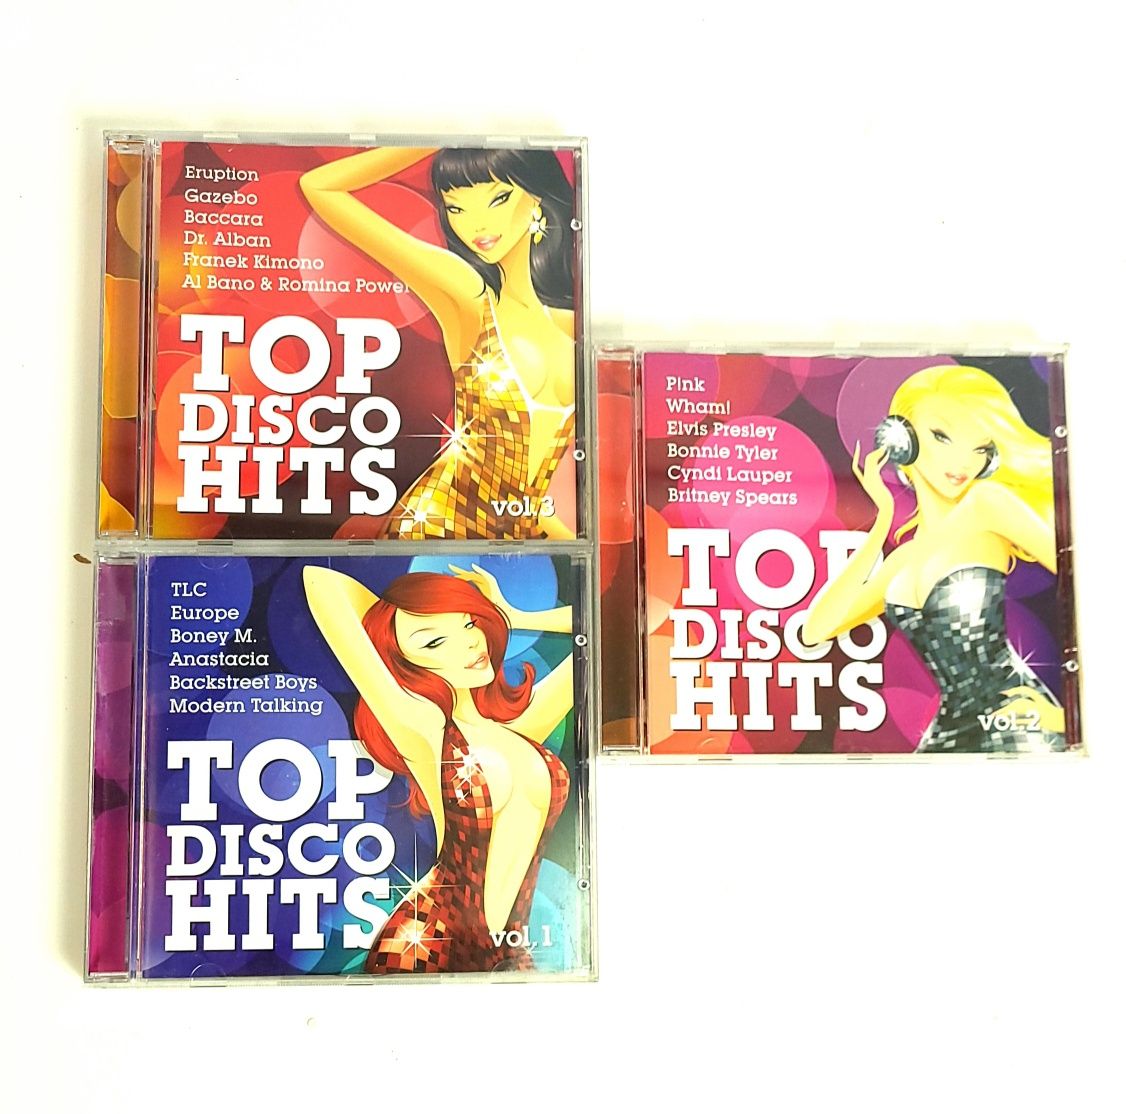 Komplet 3 płyt cd Top Disco Hits vol. 1-3